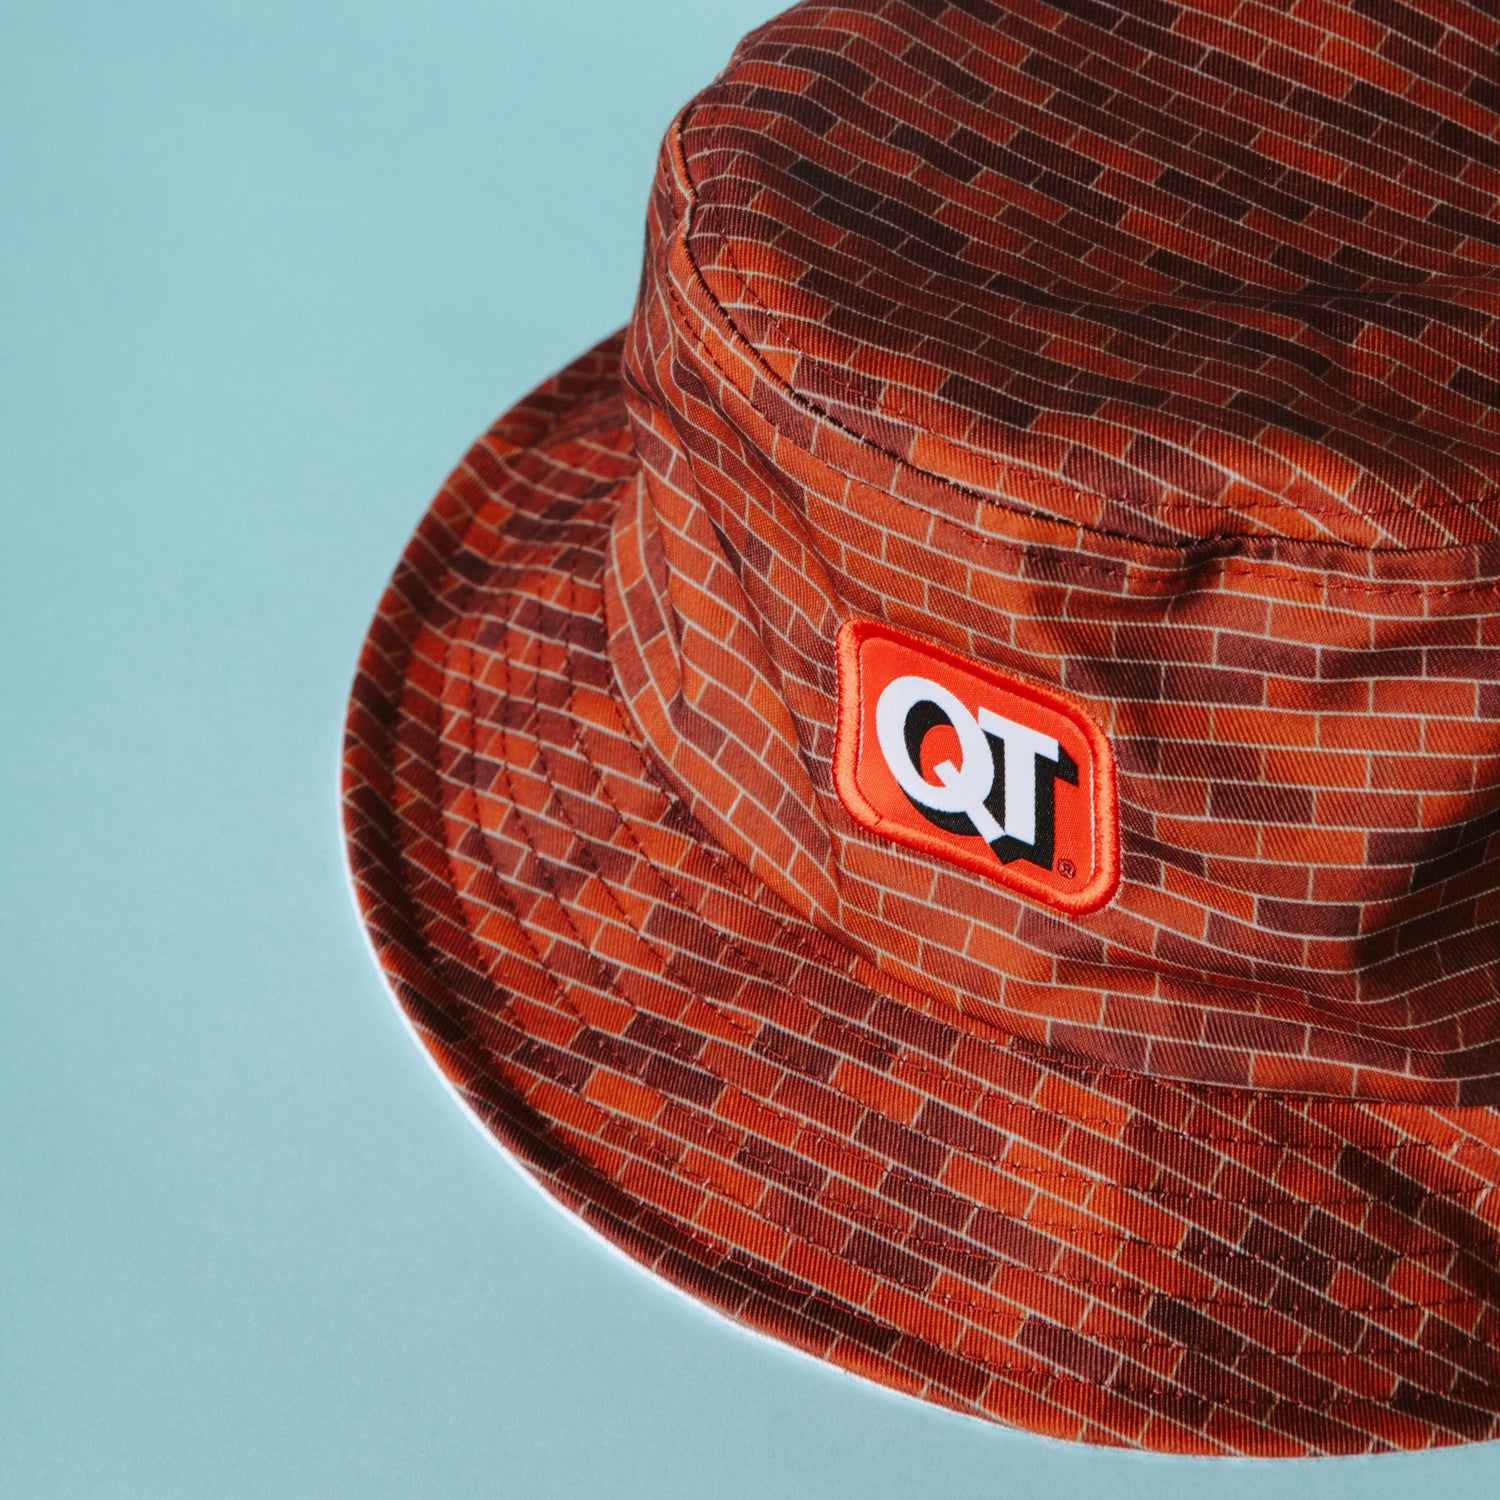 QuikTrip Store Bucket Hat